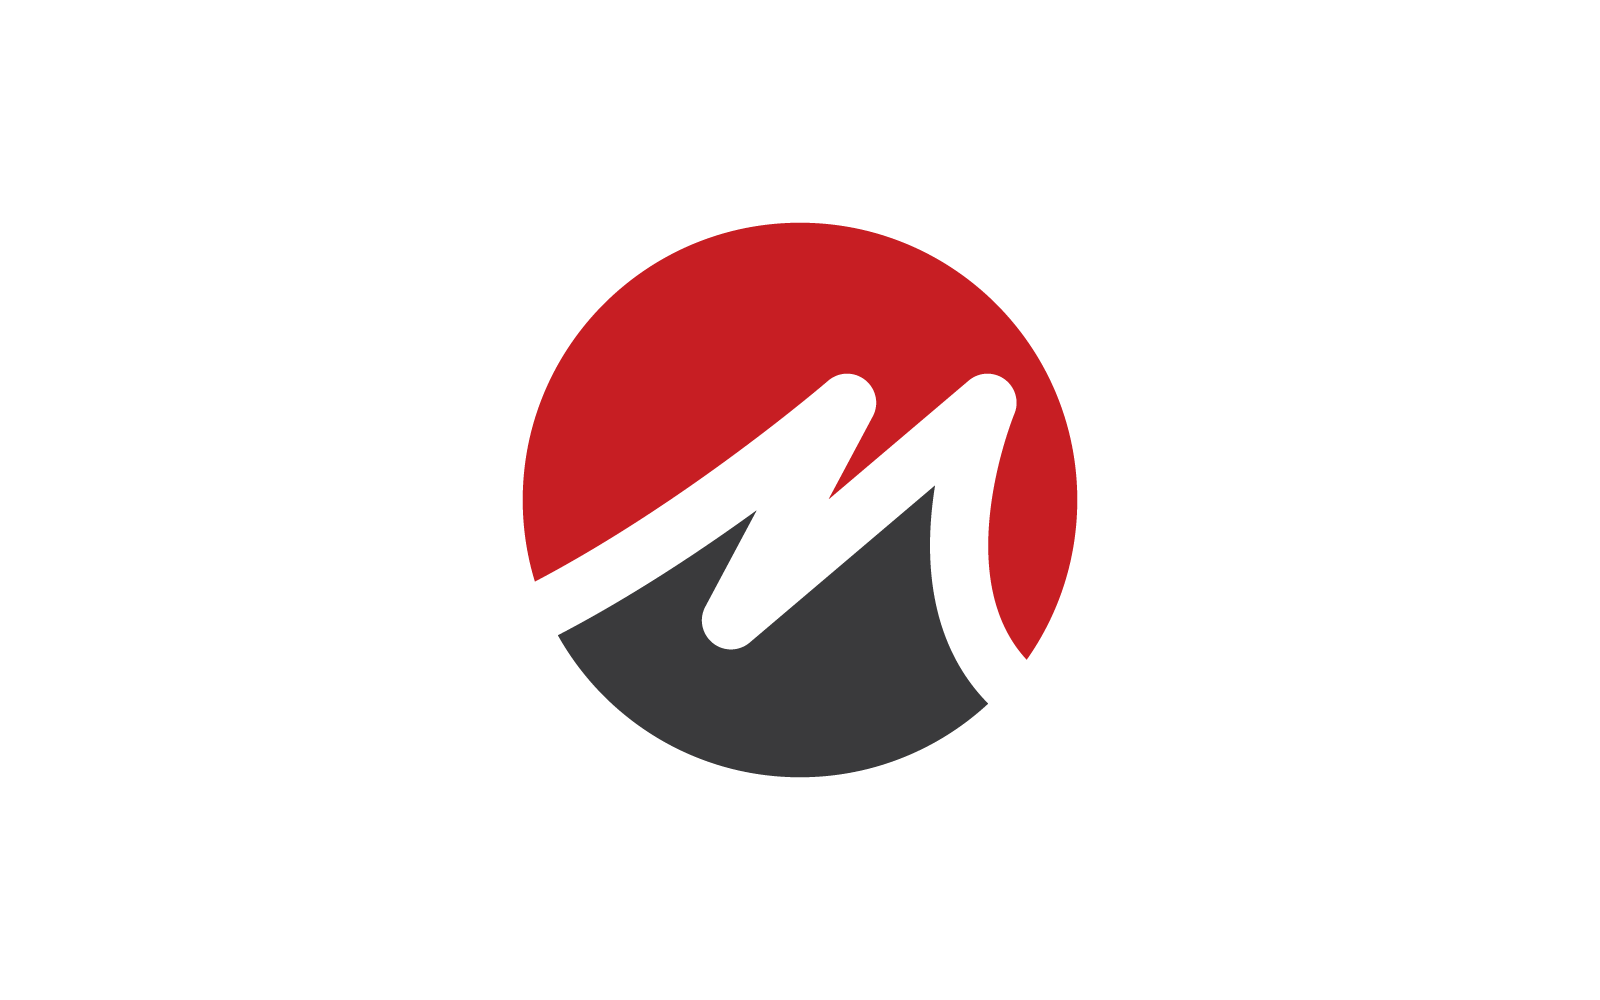 M or N Letter logo business illustration design template